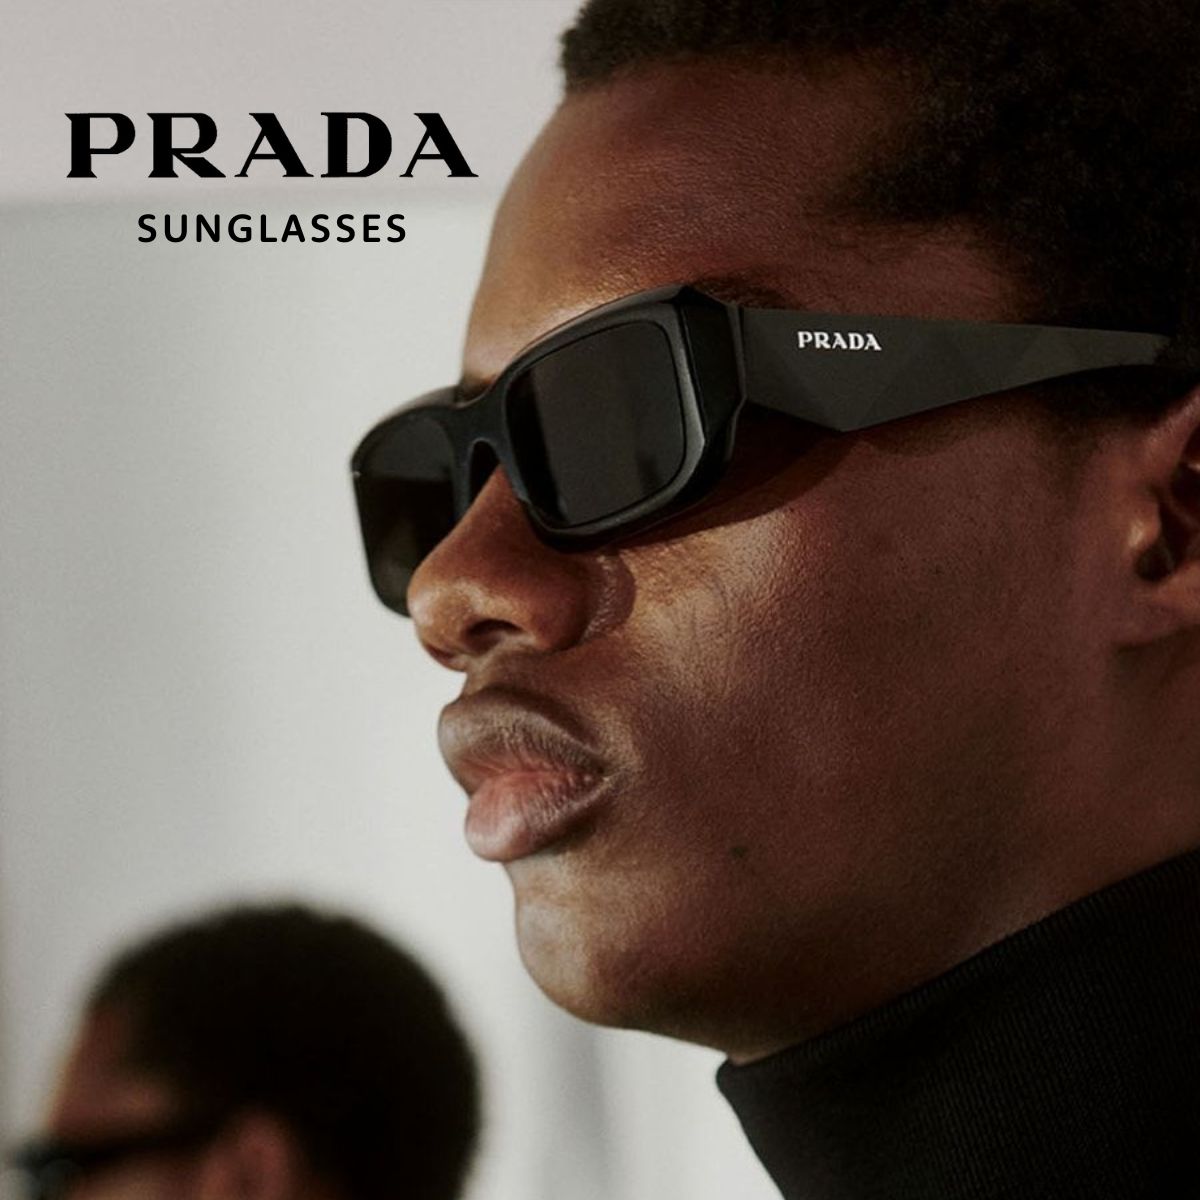 " Premium Prada Sunglasses for Men and Women online "